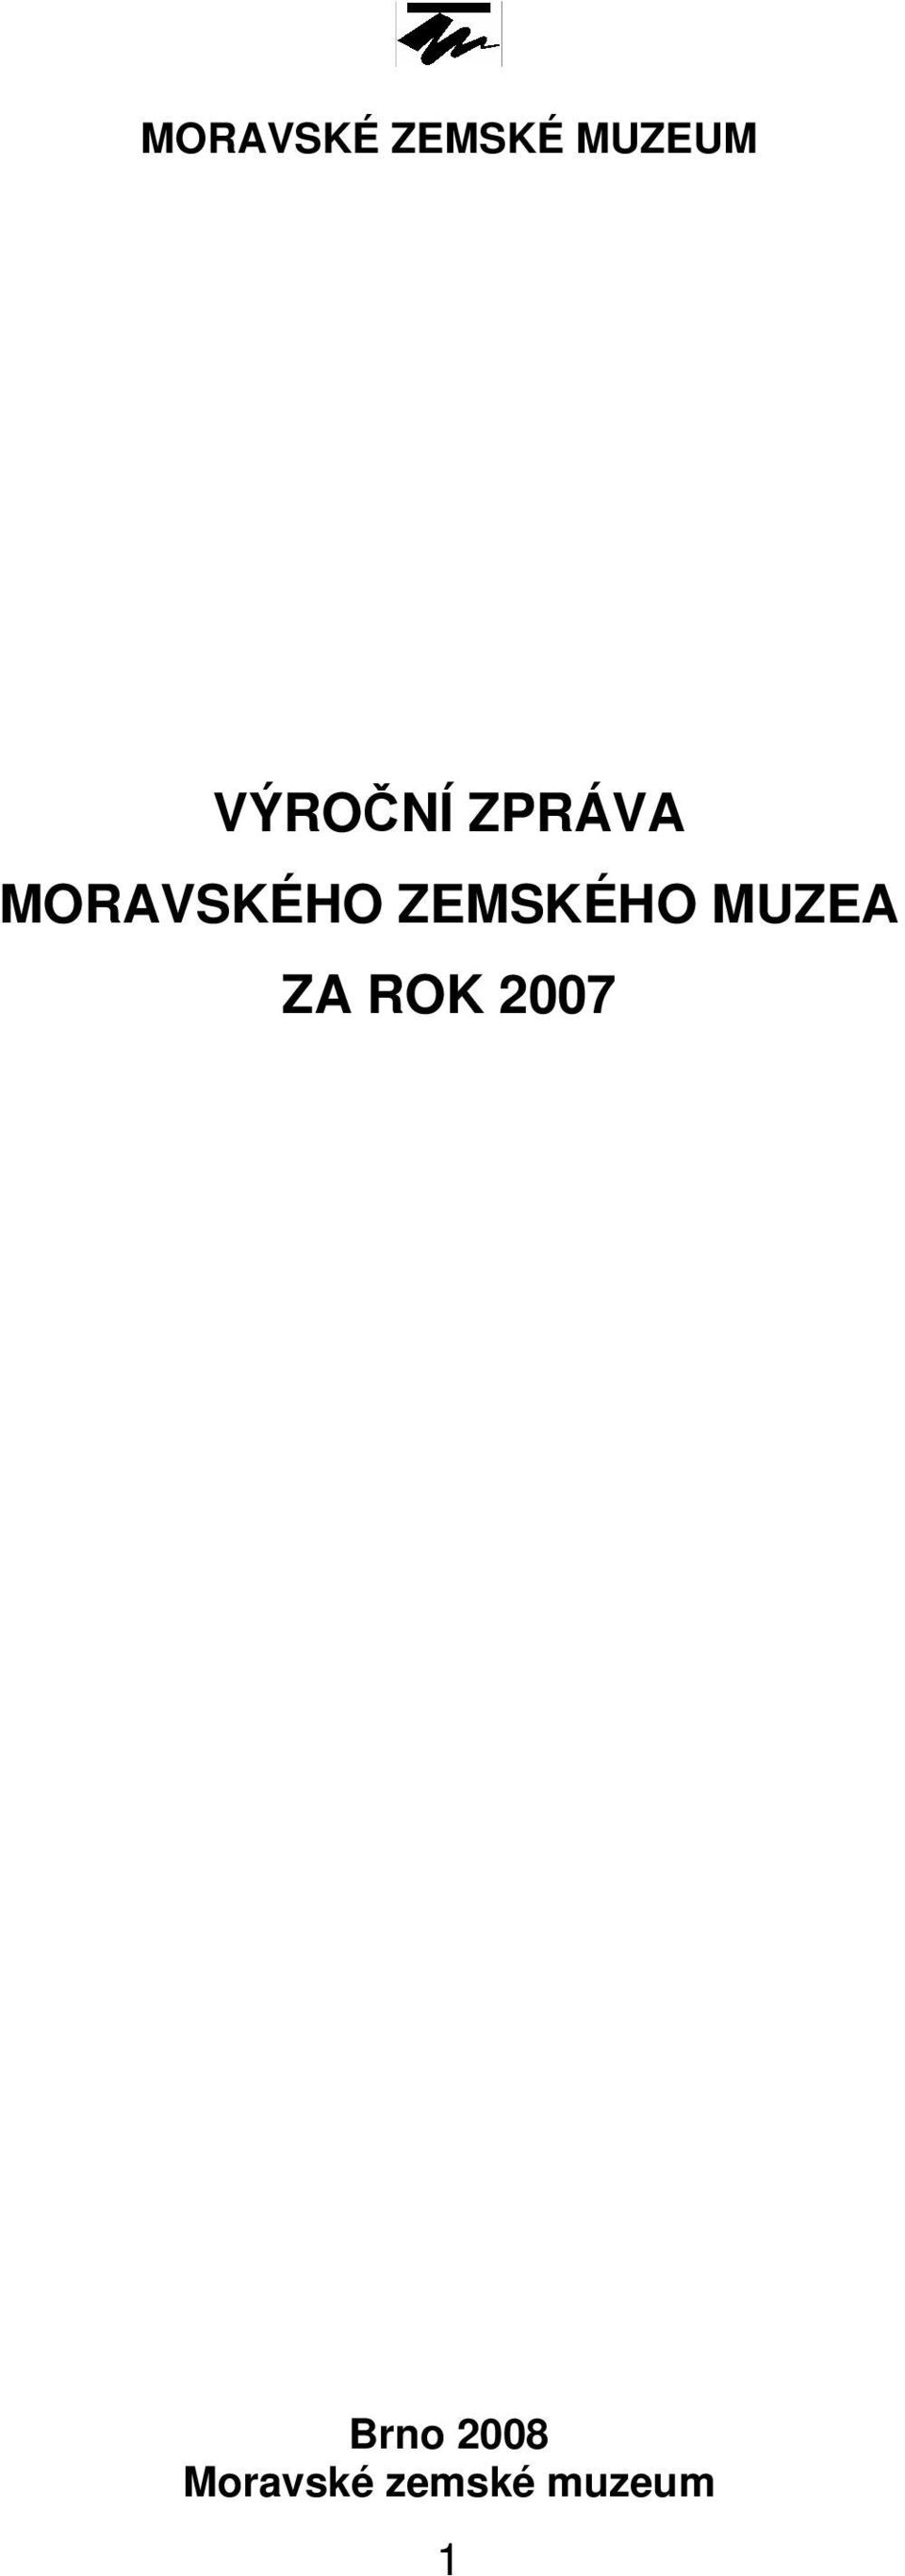 ZEMSKÉHO MUZEA ZA ROK 2007